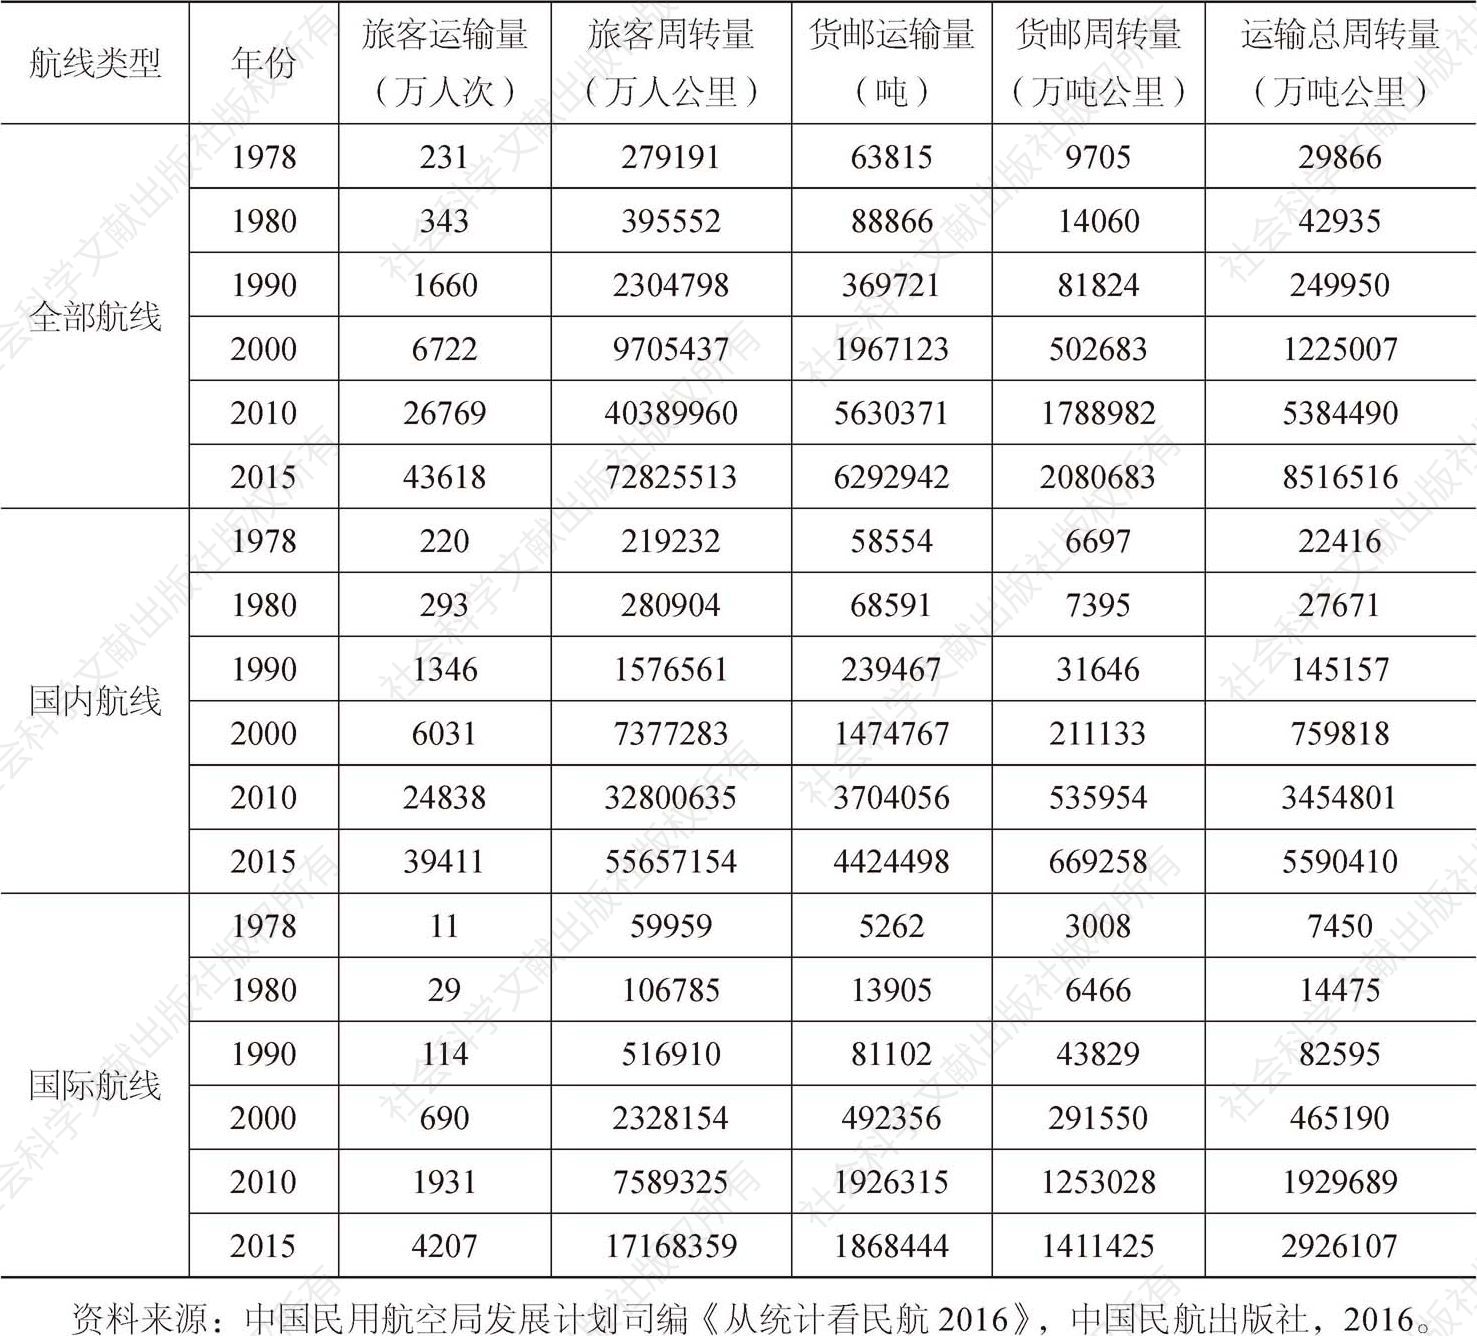 表4-4 1978～2015年中国主要年份航空运输指标统计